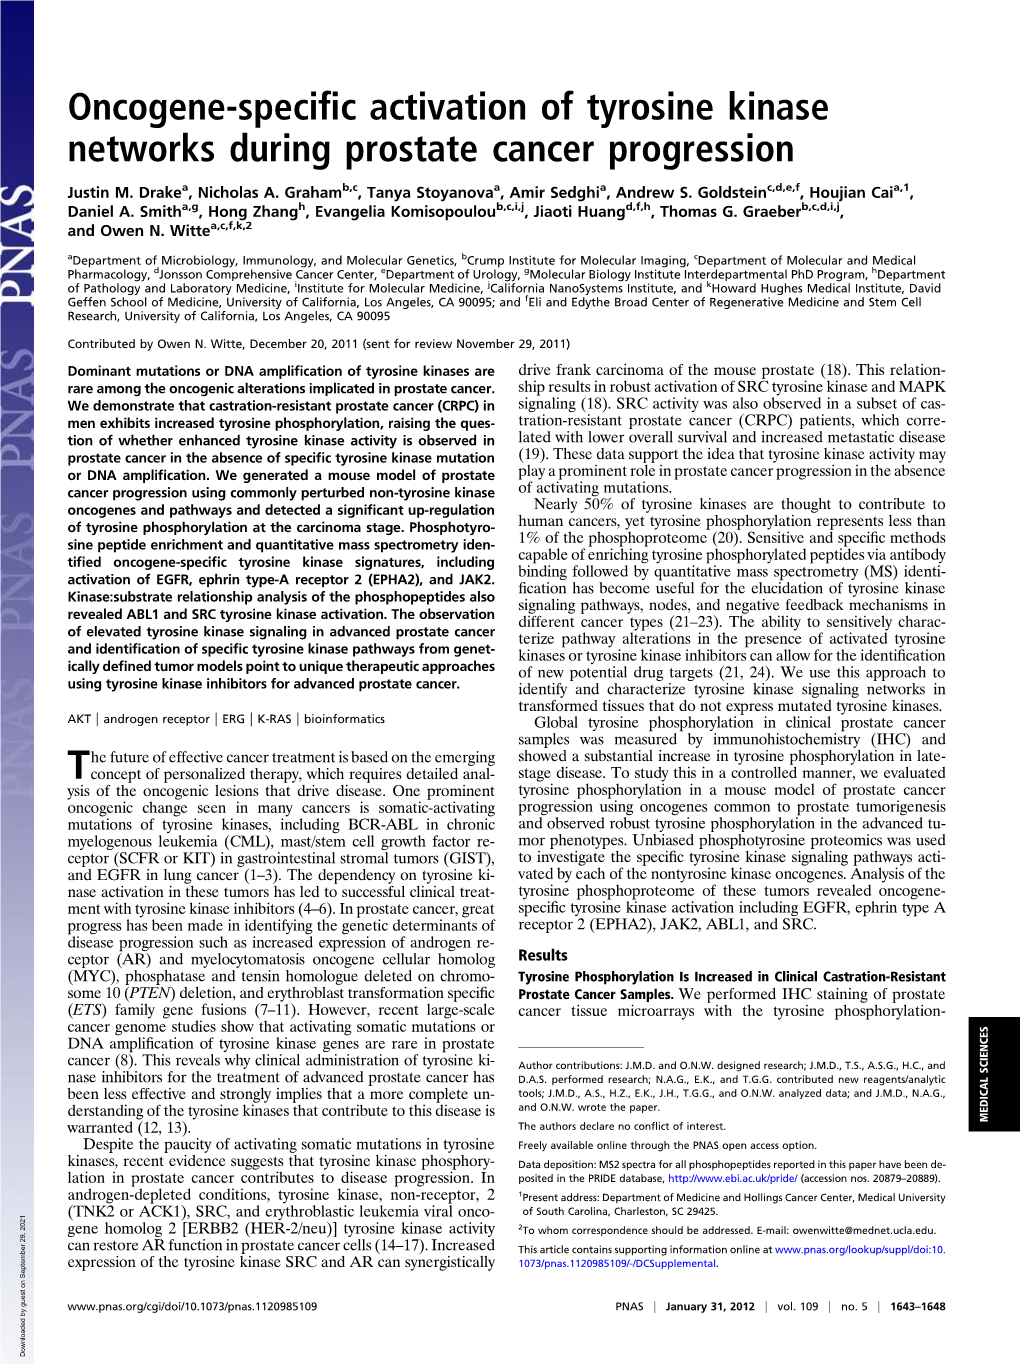 Oncogene-Specific Activation of Tyrosine Kinase Networks During Prostate Cancer Progression